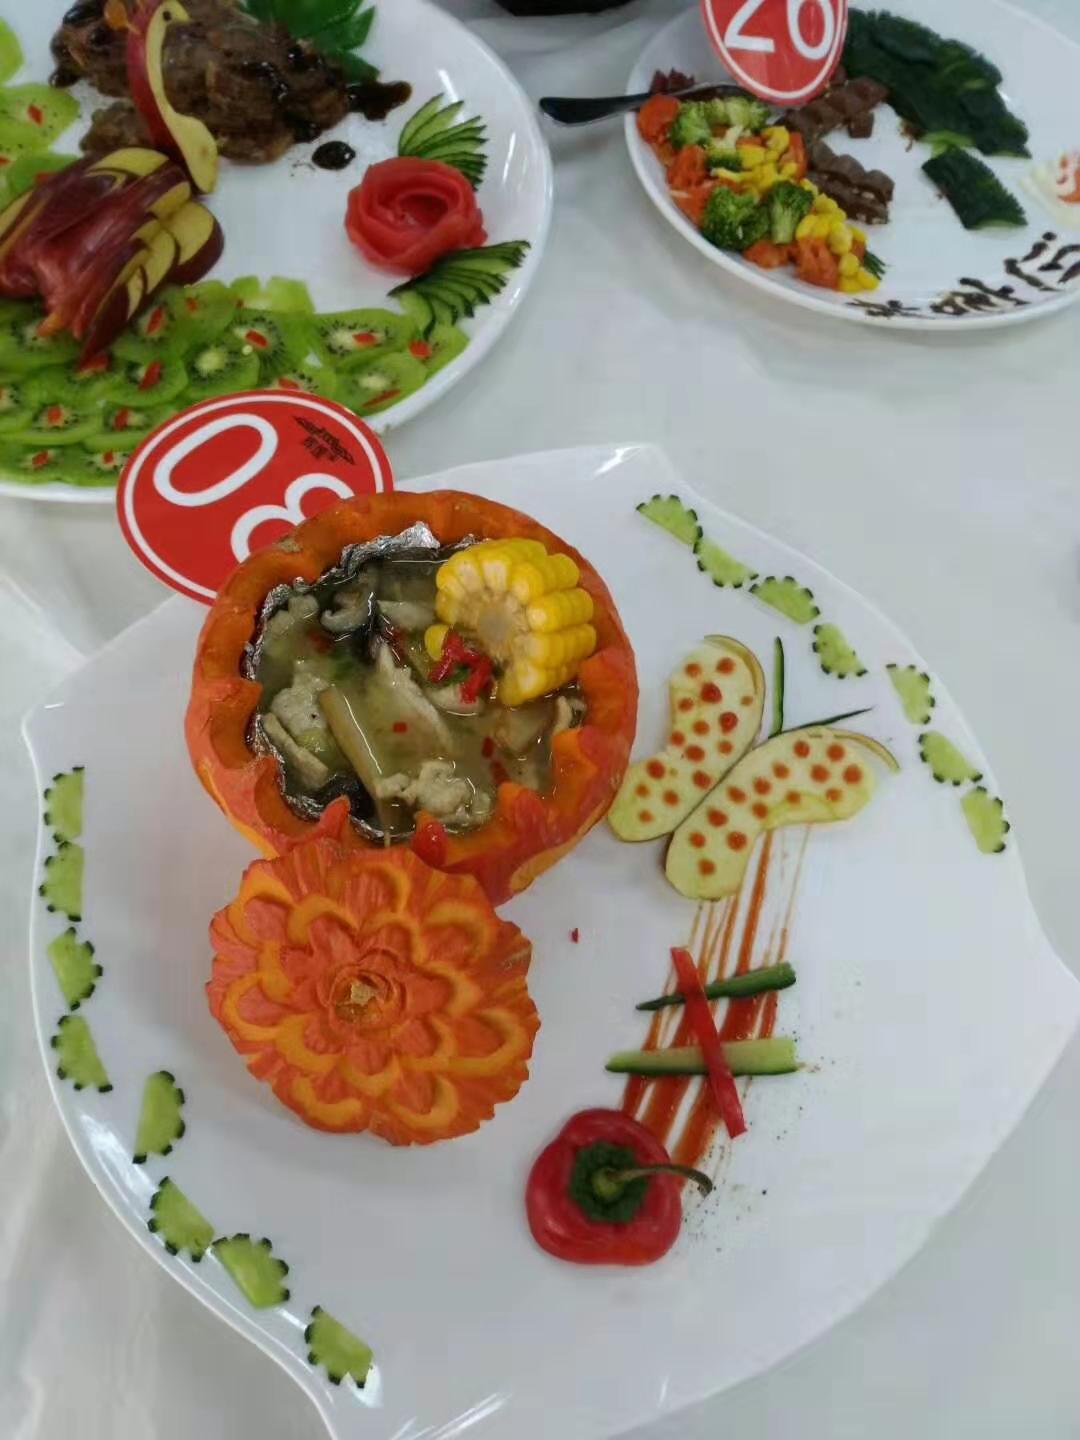 掌握生活技能 弘扬美食文化——学院举办第四届厨艺大赛